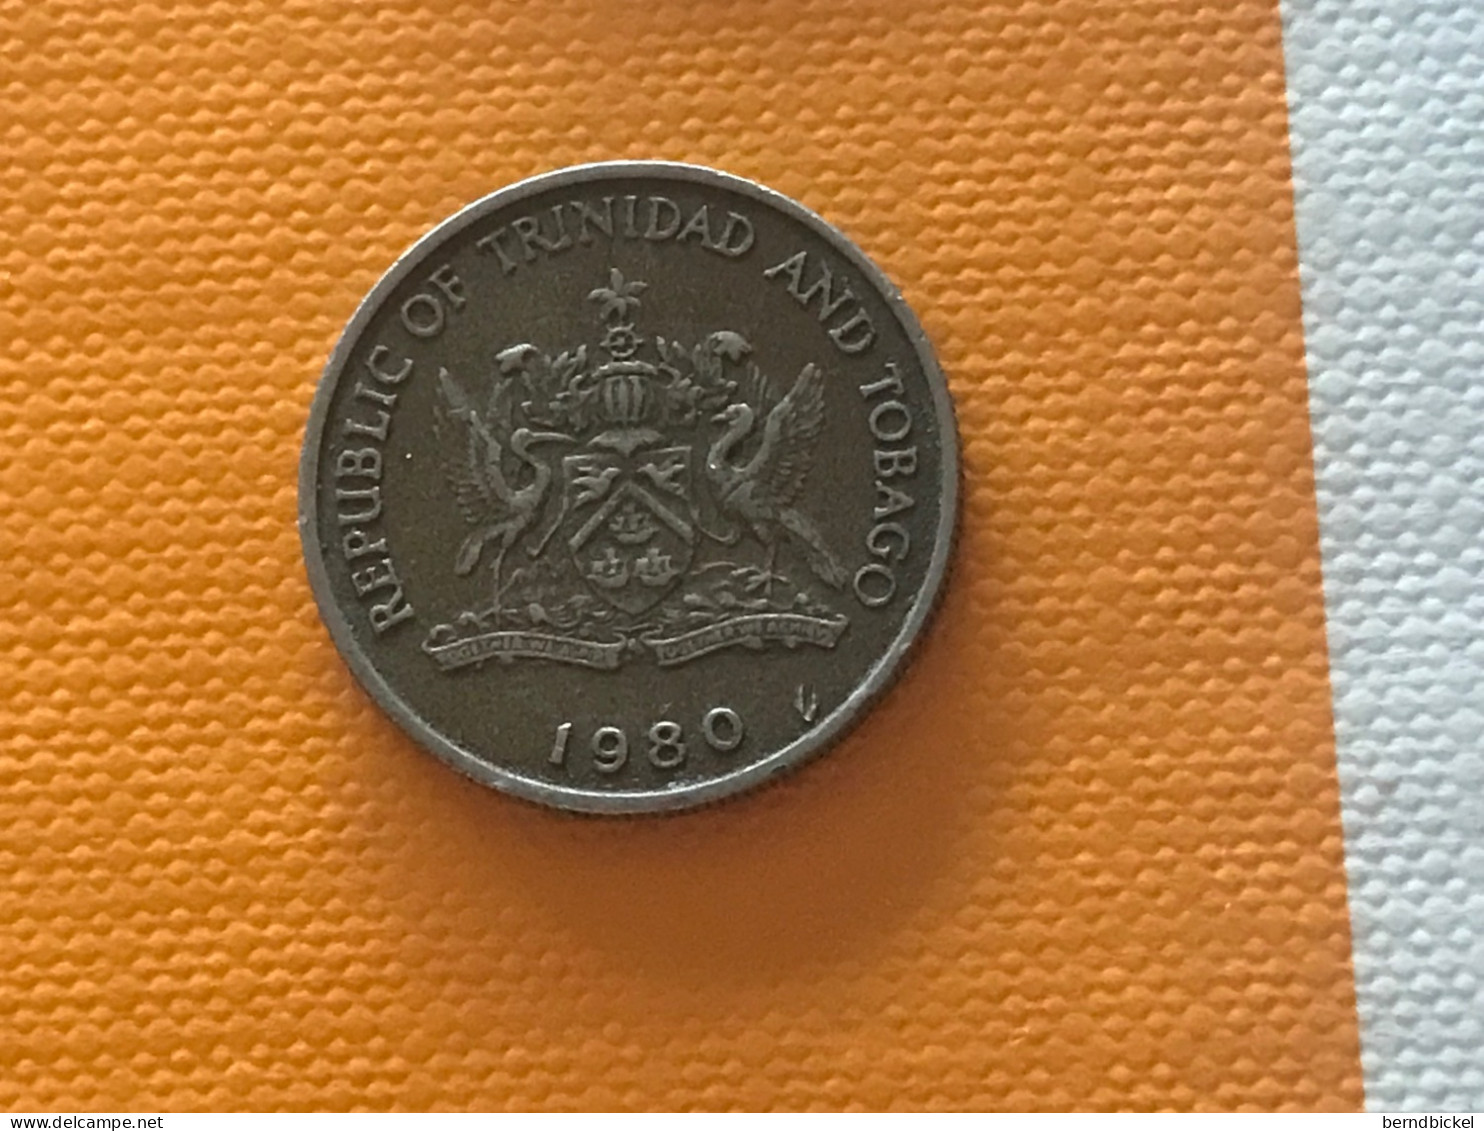 Münze Münzen Umlaufmünze Trinidad & Tobago 25 Cents 1980 - Trinidad En Tobago